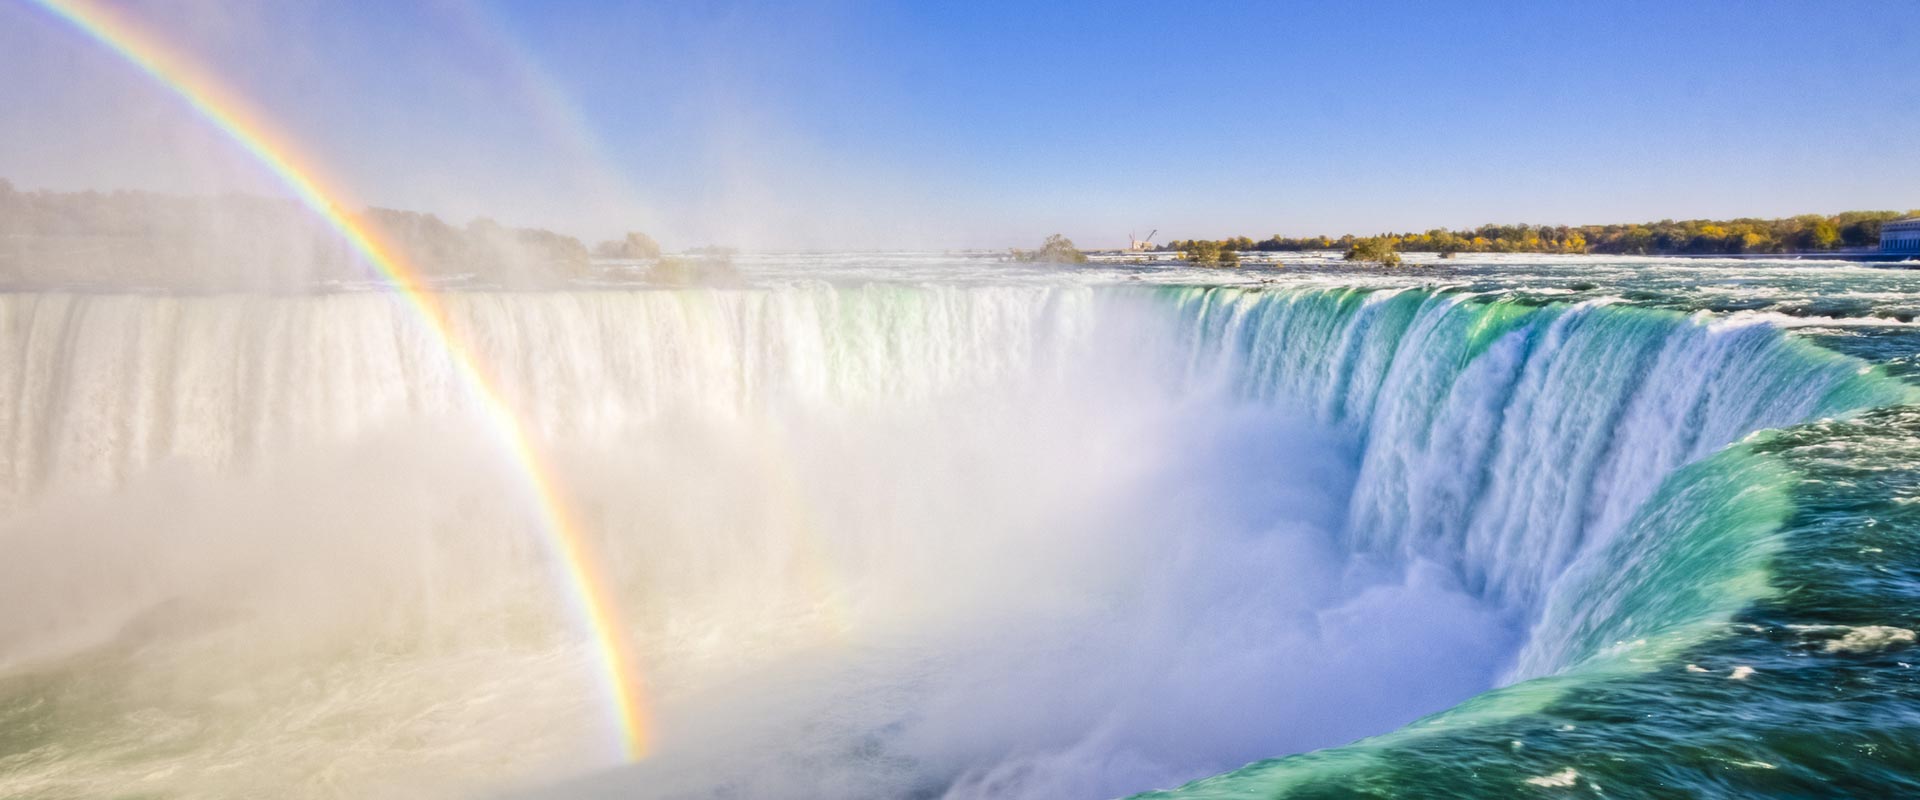 Niagara Falls Canada Summer Tour